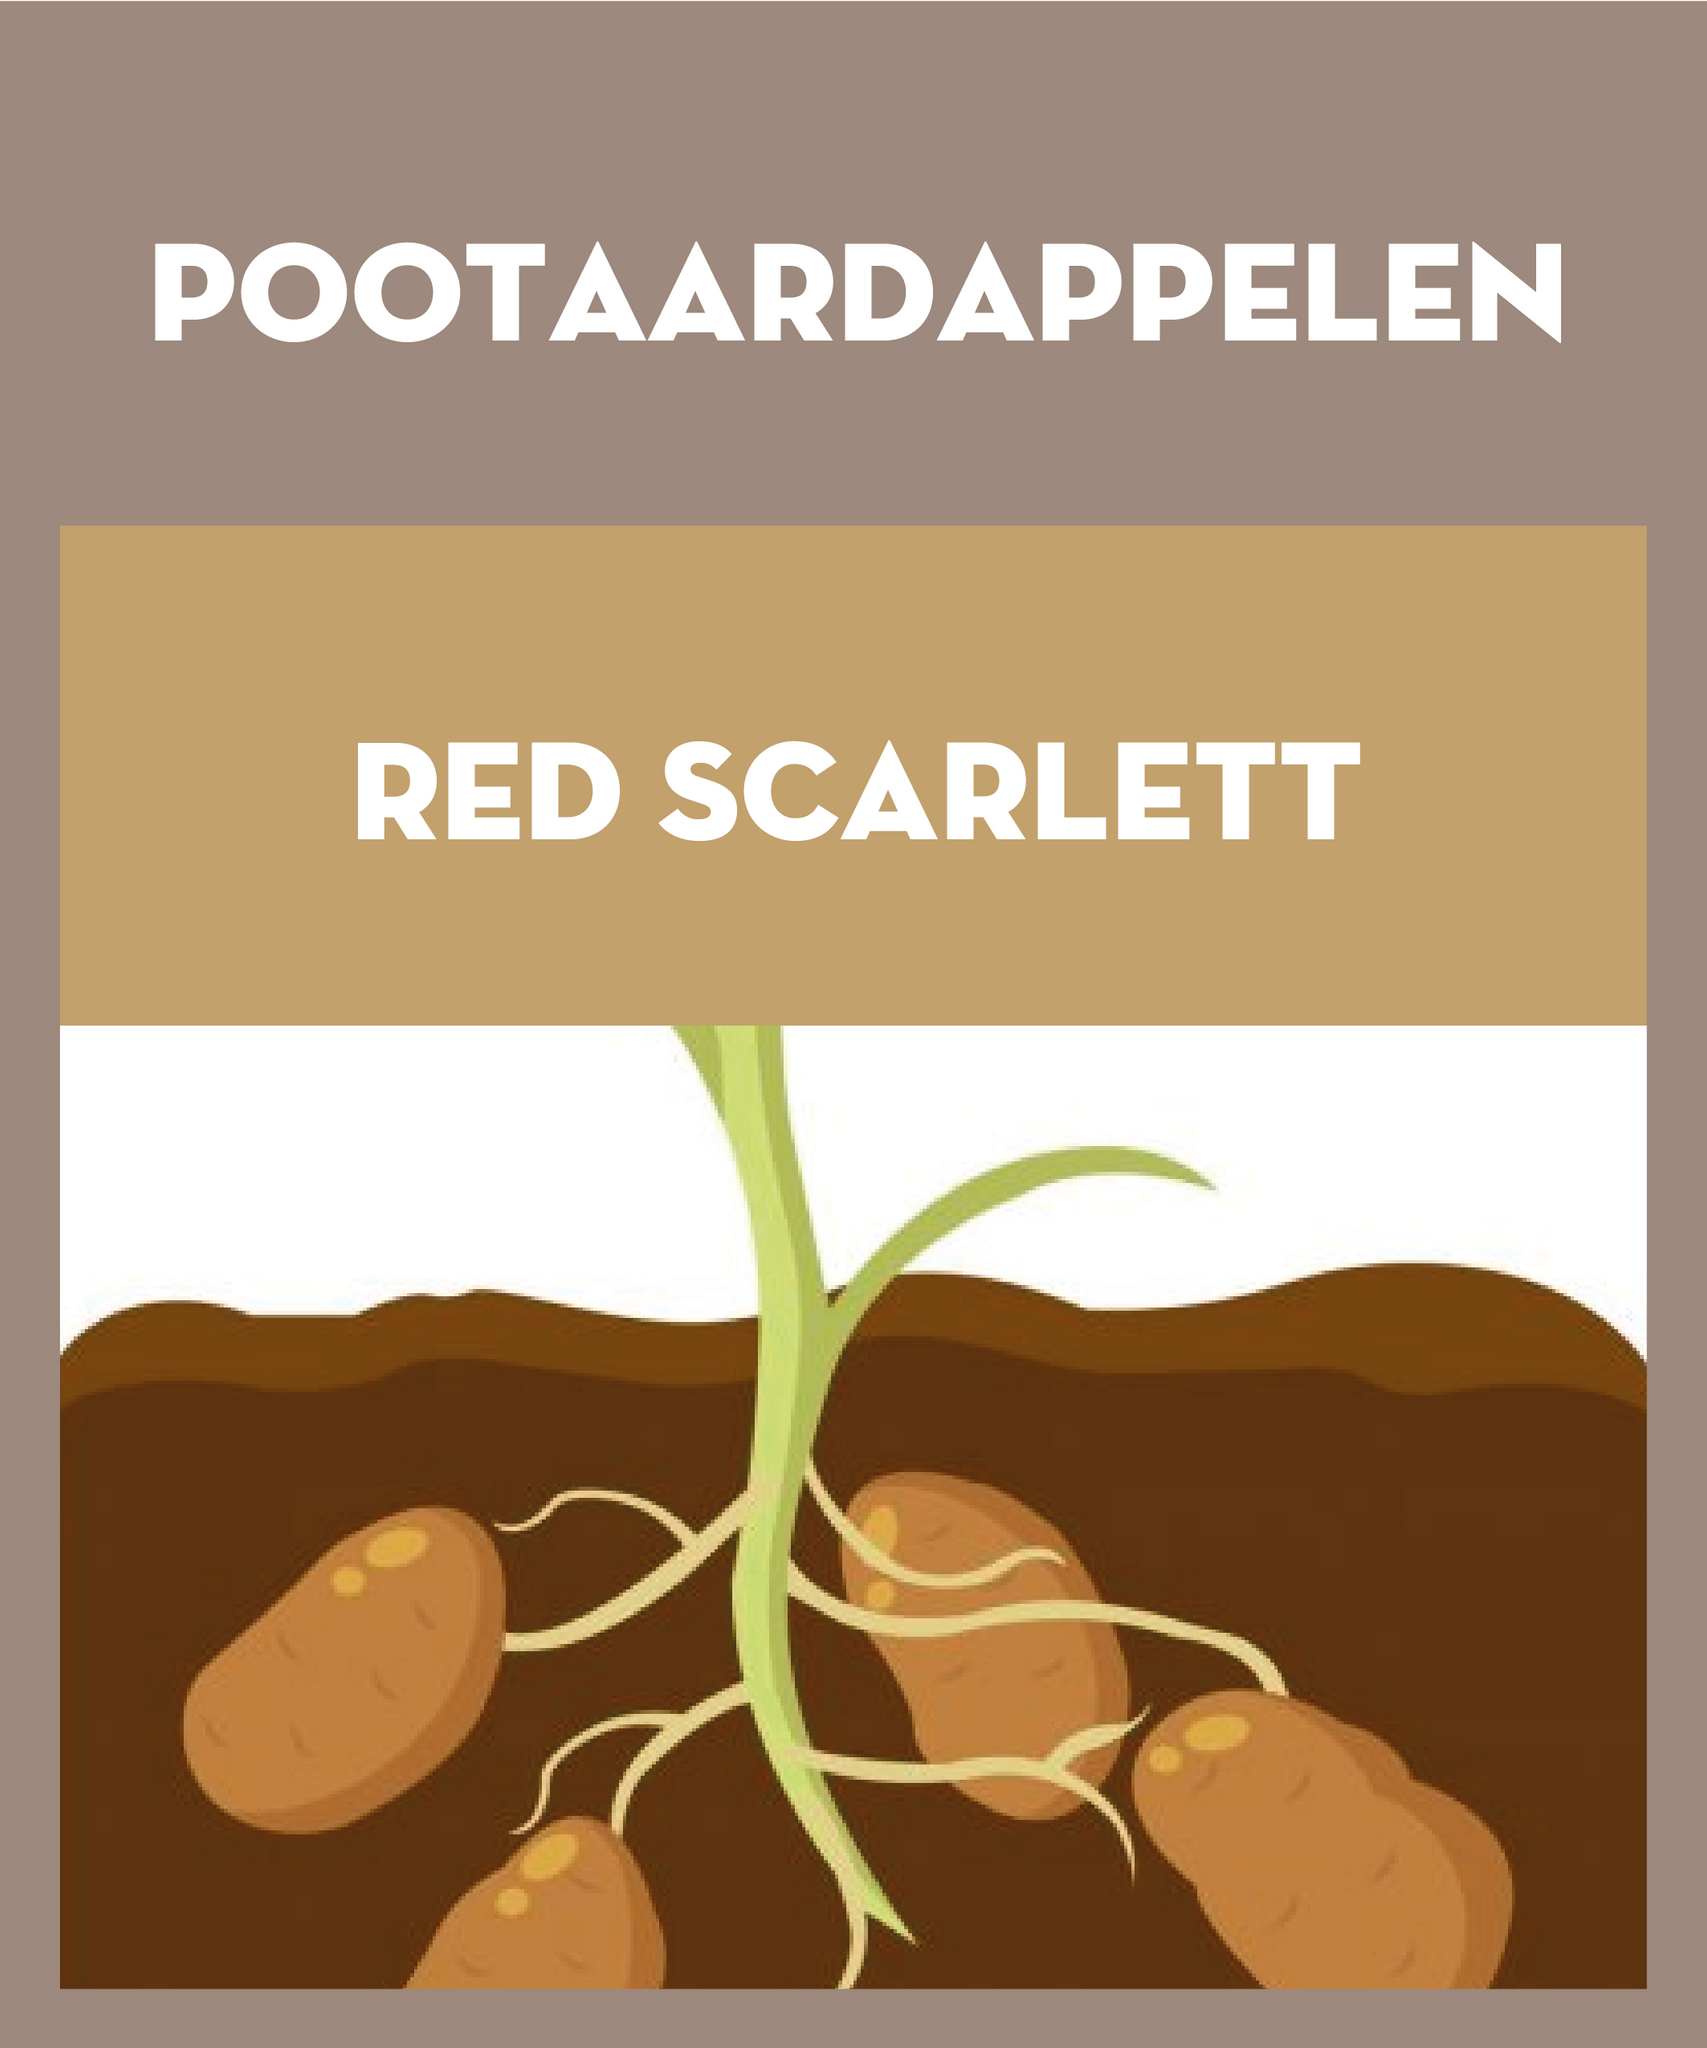 Red Scarlett pootaardappelen 2.5kg